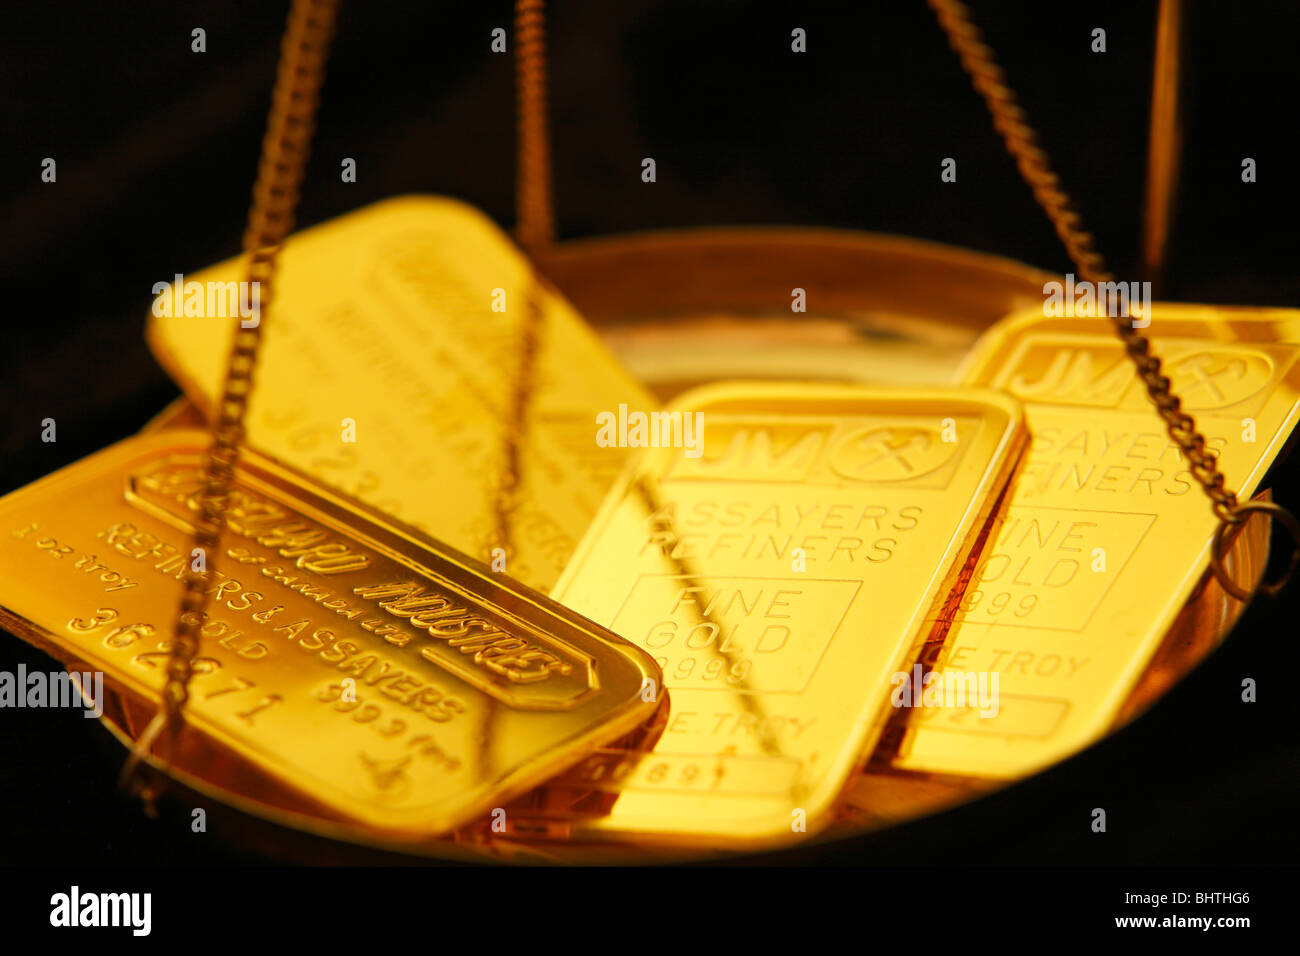 Une once d'or dans le bac de balance Banque D'Images